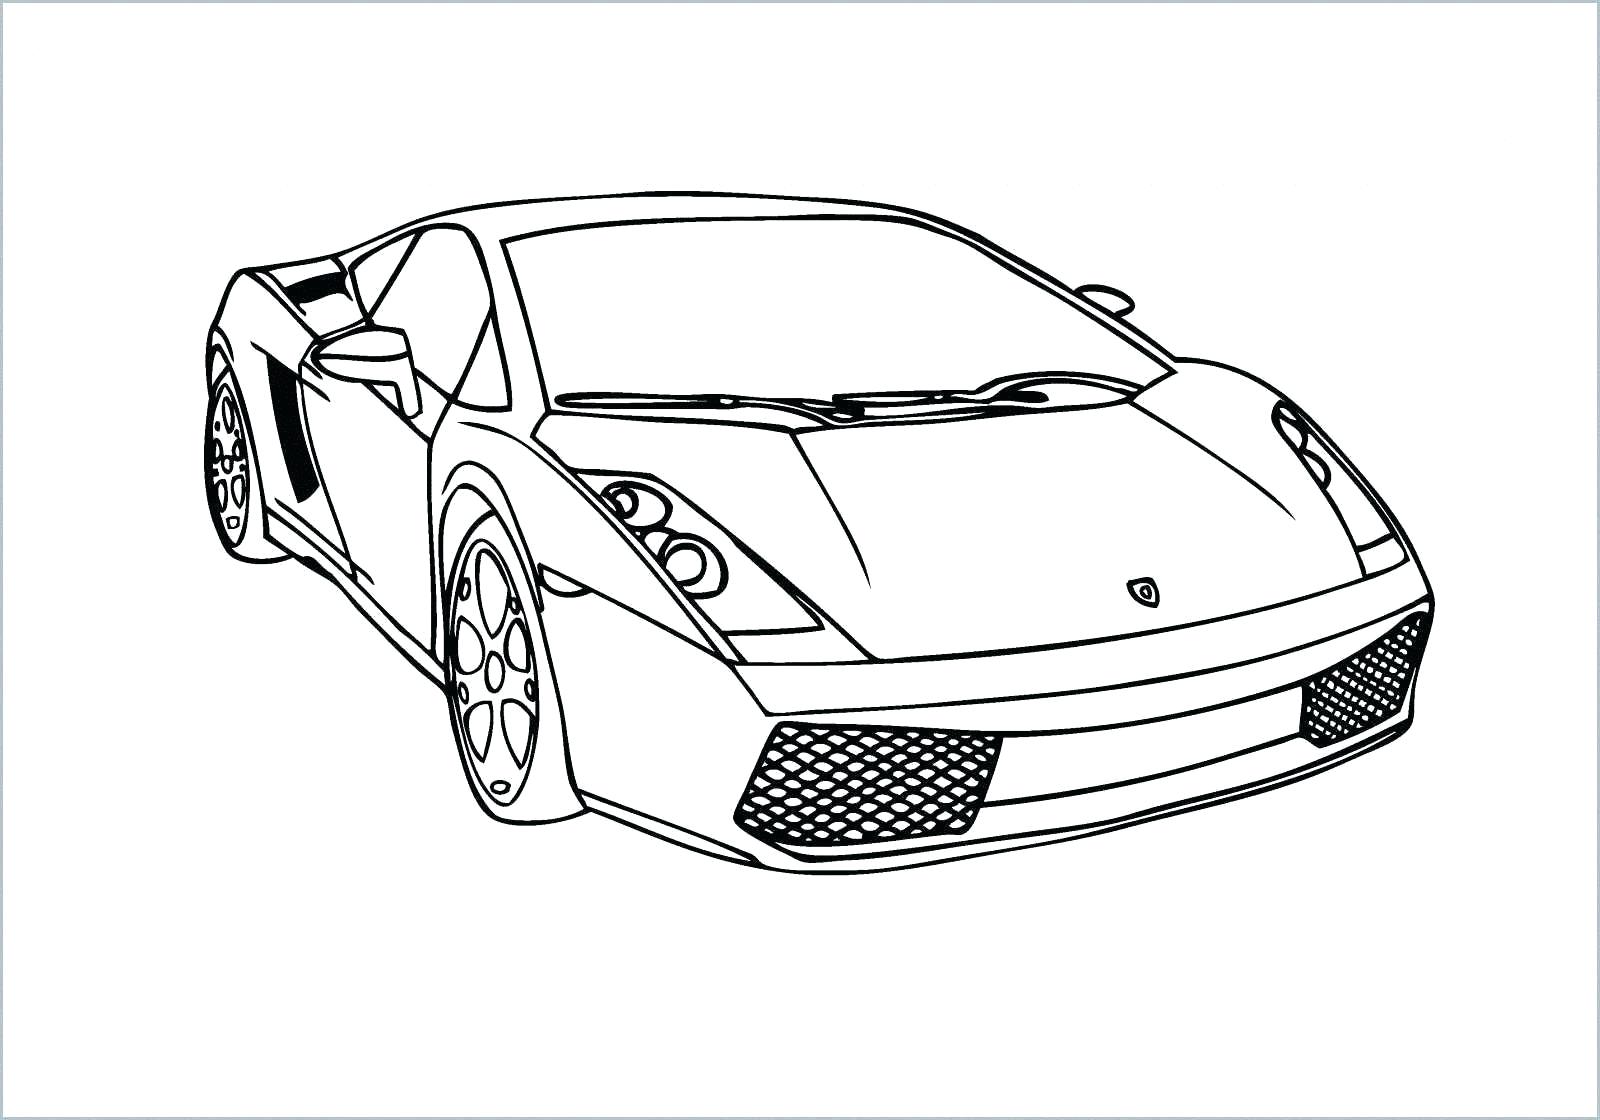 Siêu xe Lamborghini được biết đến với tốc độ và sức mạnh phi thường. Dòng xe này là niềm khao khát của bất cứ ai yêu thích tốc độ và đam mê siêu xe. Hãy tham gia trên trang web của chúng tôi để ngắm nhìn sự hoàn hảo của siêu xe Lamborghini.